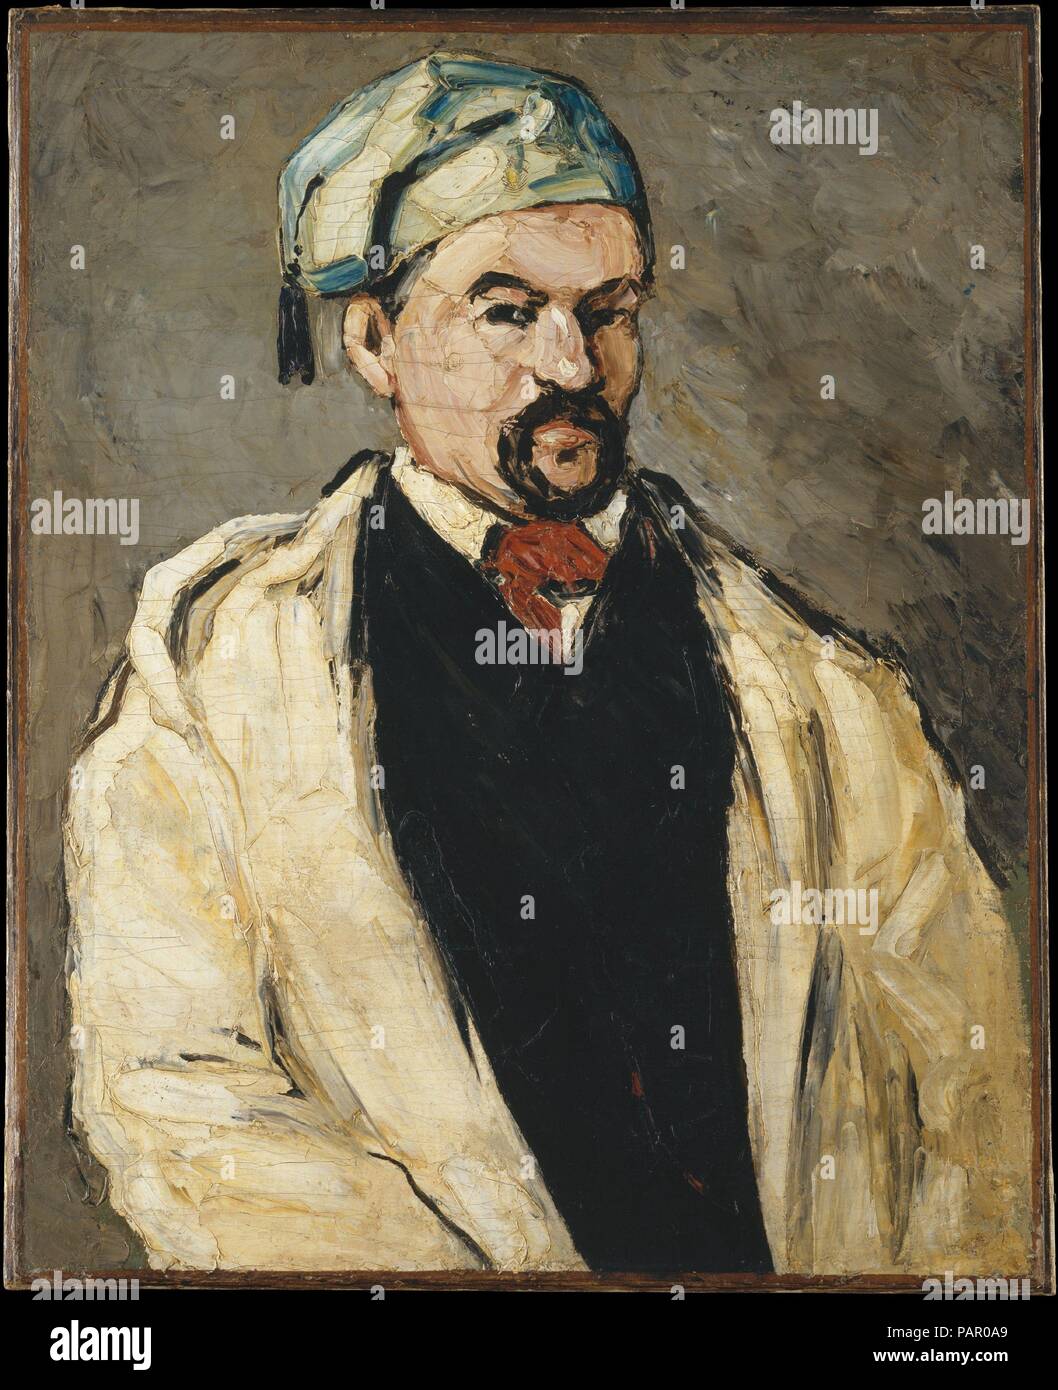 Antoine Dominique Sauveur Aubert (nato 1817), l'artista lo zio. Artista: Paul Cézanne (francese, Aix-en-Provence 1839-1906 Aix-en-Provence). Dimensioni: 31 3/8 x 25 1/4 in. (79,7 x 64,1 cm). Data: 1866. Nell'autunno del 1866, durante il suo soggiorno presso la sua famiglia, la casa vicino a Aix-en-Provence, Cézanne ha intrapreso una serie di dipinti di suo zio materno, Dominique Aubert, in costumi diversi. Qui egli indossa una tunica e tasseled tappo blu; in un'altra opera nella collezione del museo, egli si pone come un monaco (1993.400.1). Un amico ha riferito nel novembre: 'Ogni giorno vi appare una [Nuovo] ritratto di lui.' Cézanne una Foto Stock